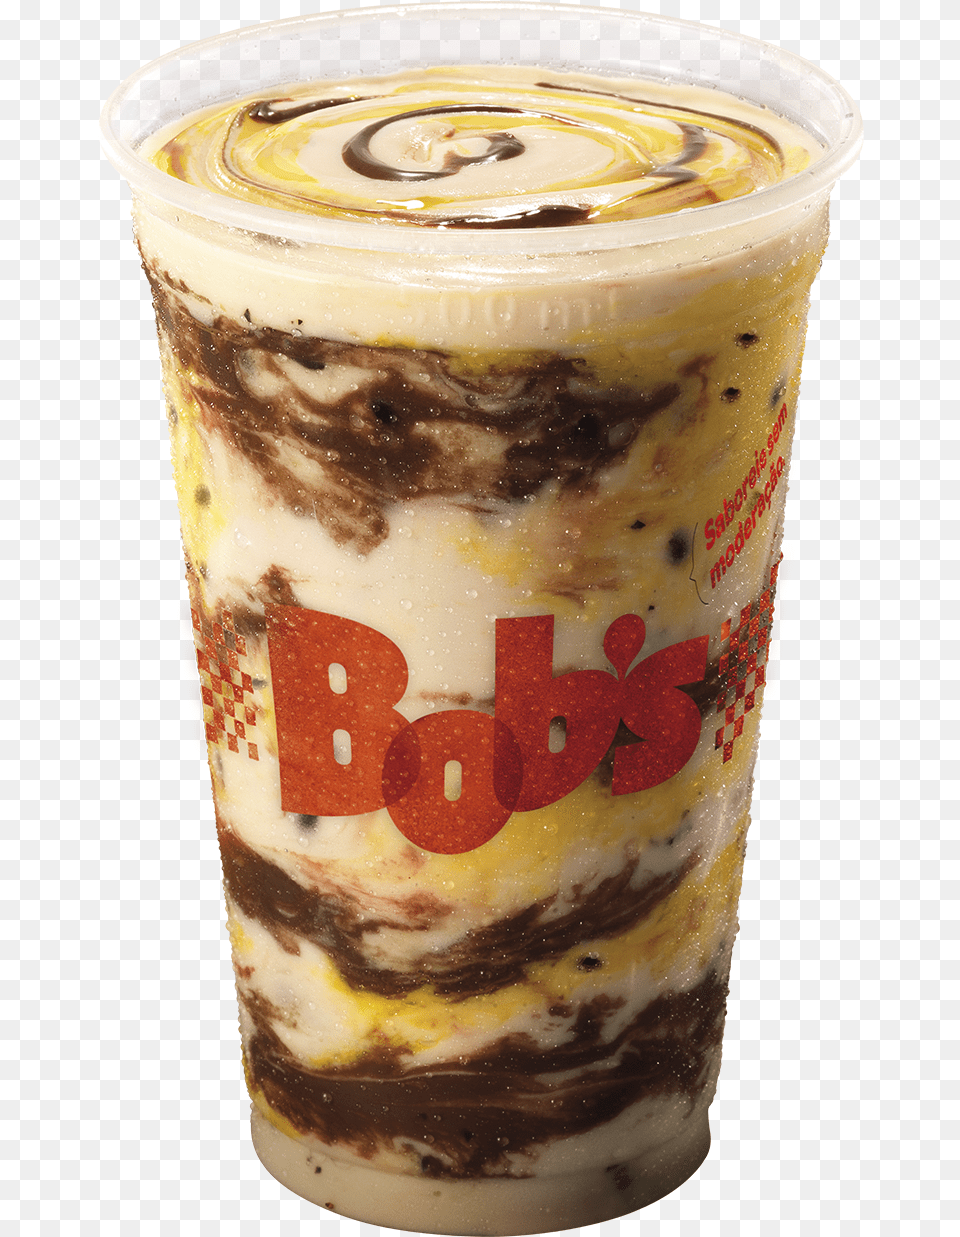 Novo Milk Shake Do Bob S Milk Shake De Maracuj, Cream, Dessert, Food, Ice Cream Png Image